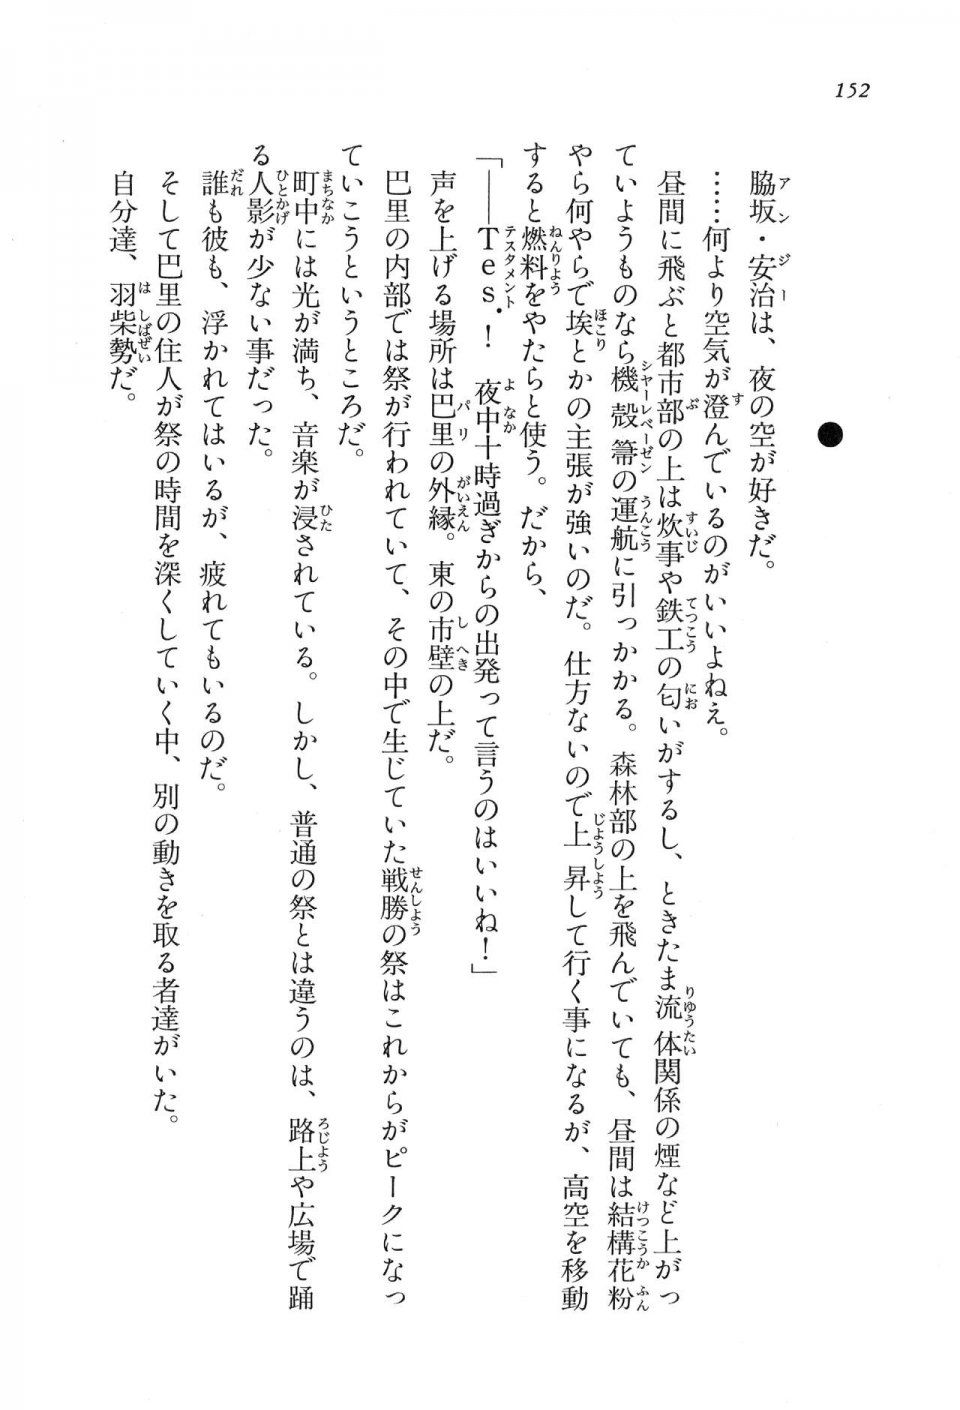 Kyoukai Senjou no Horizon LN Vol 16(7A) - Photo #152